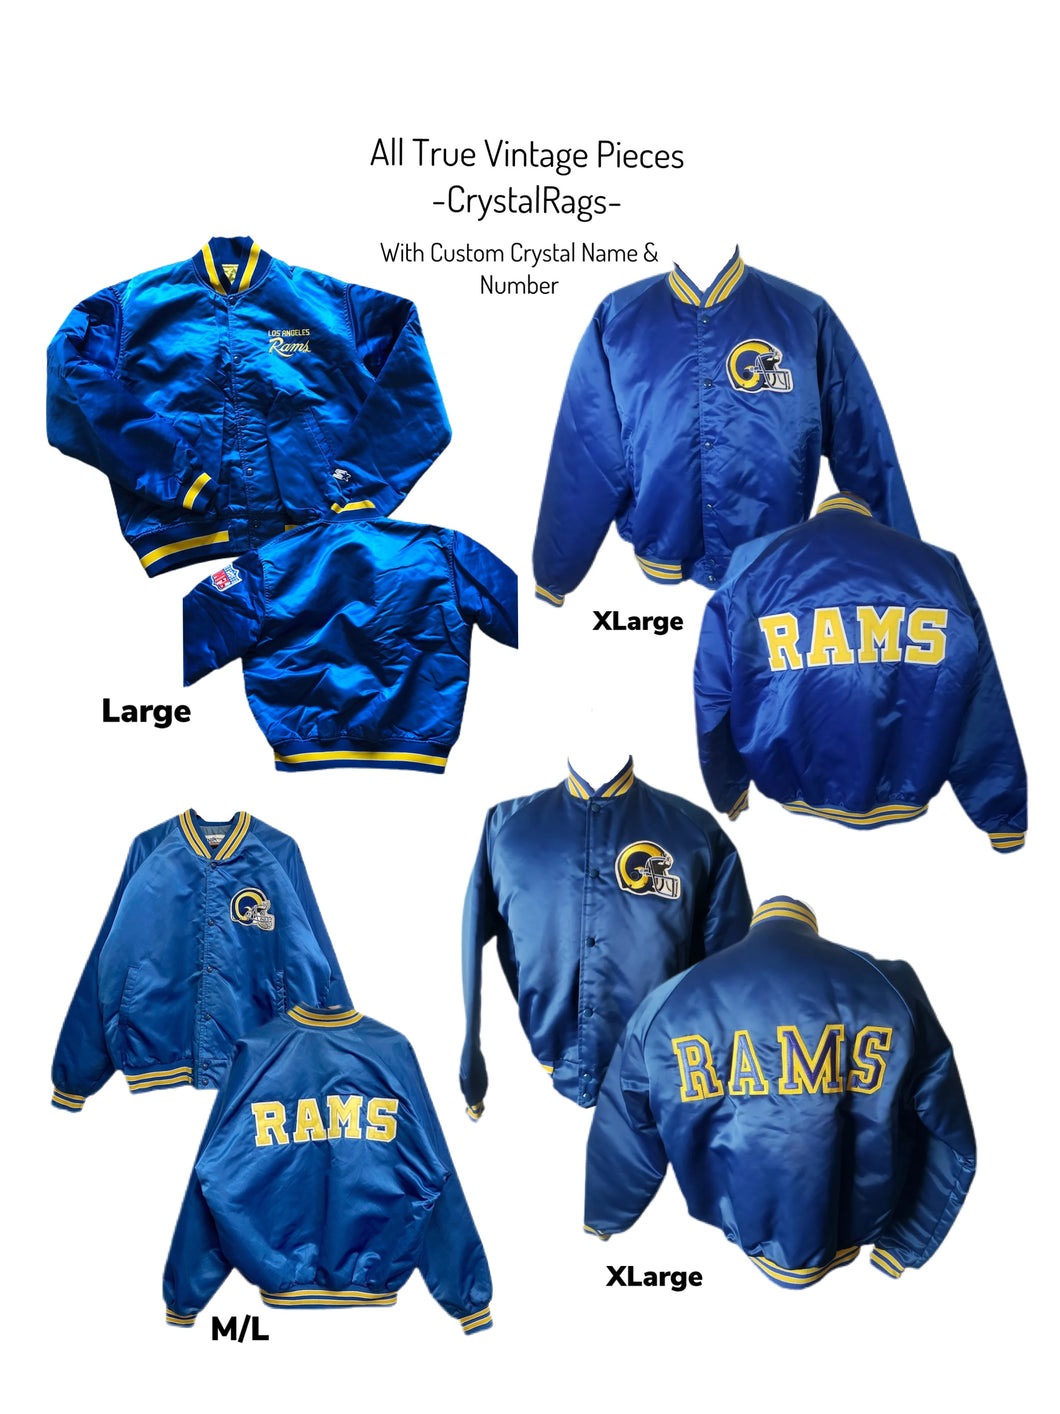 LA Rams, NFL One of a KIND Vintage Bomber Jacket with Custom Crystal Name & Number Design